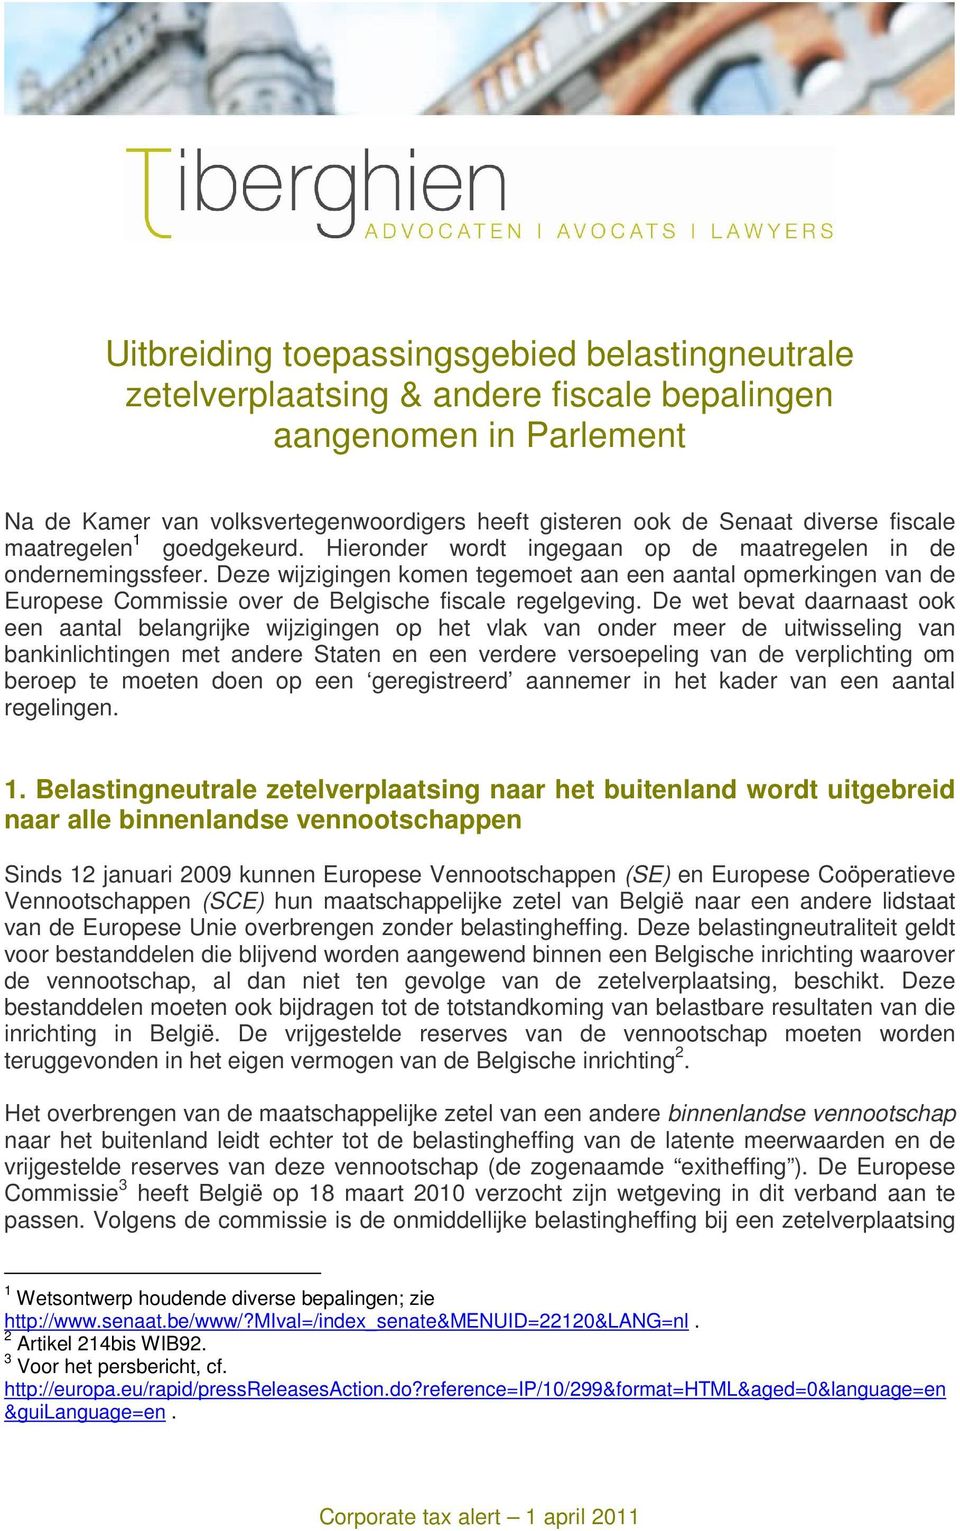 Deze wijzigingen komen tegemoet aan een aantal opmerkingen van de Europese Commissie over de Belgische fiscale regelgeving.